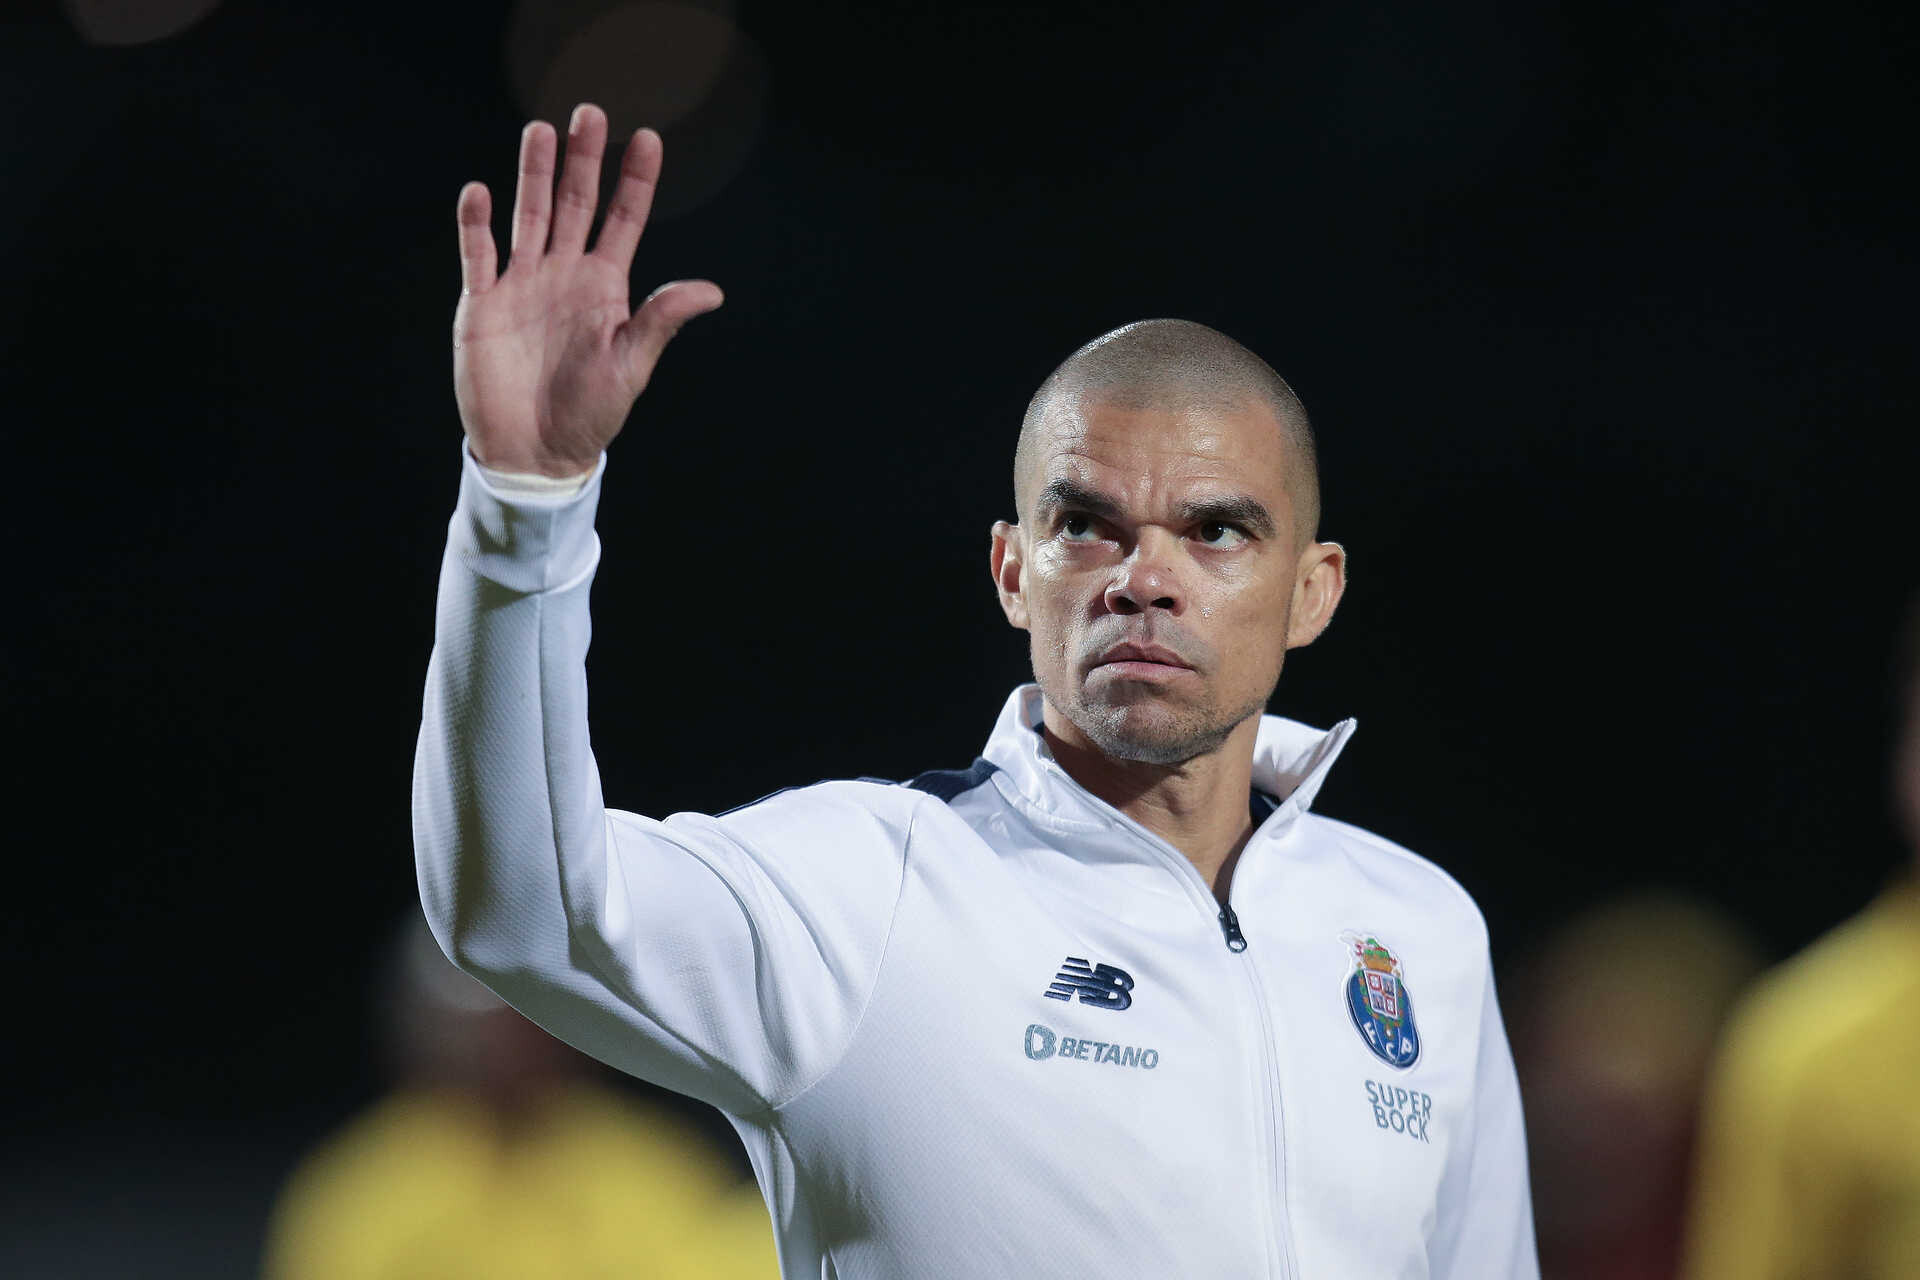 Pepes „Zirkus“ zielte nicht auf die Schiedsrichter des Spiels Benfica-Porto